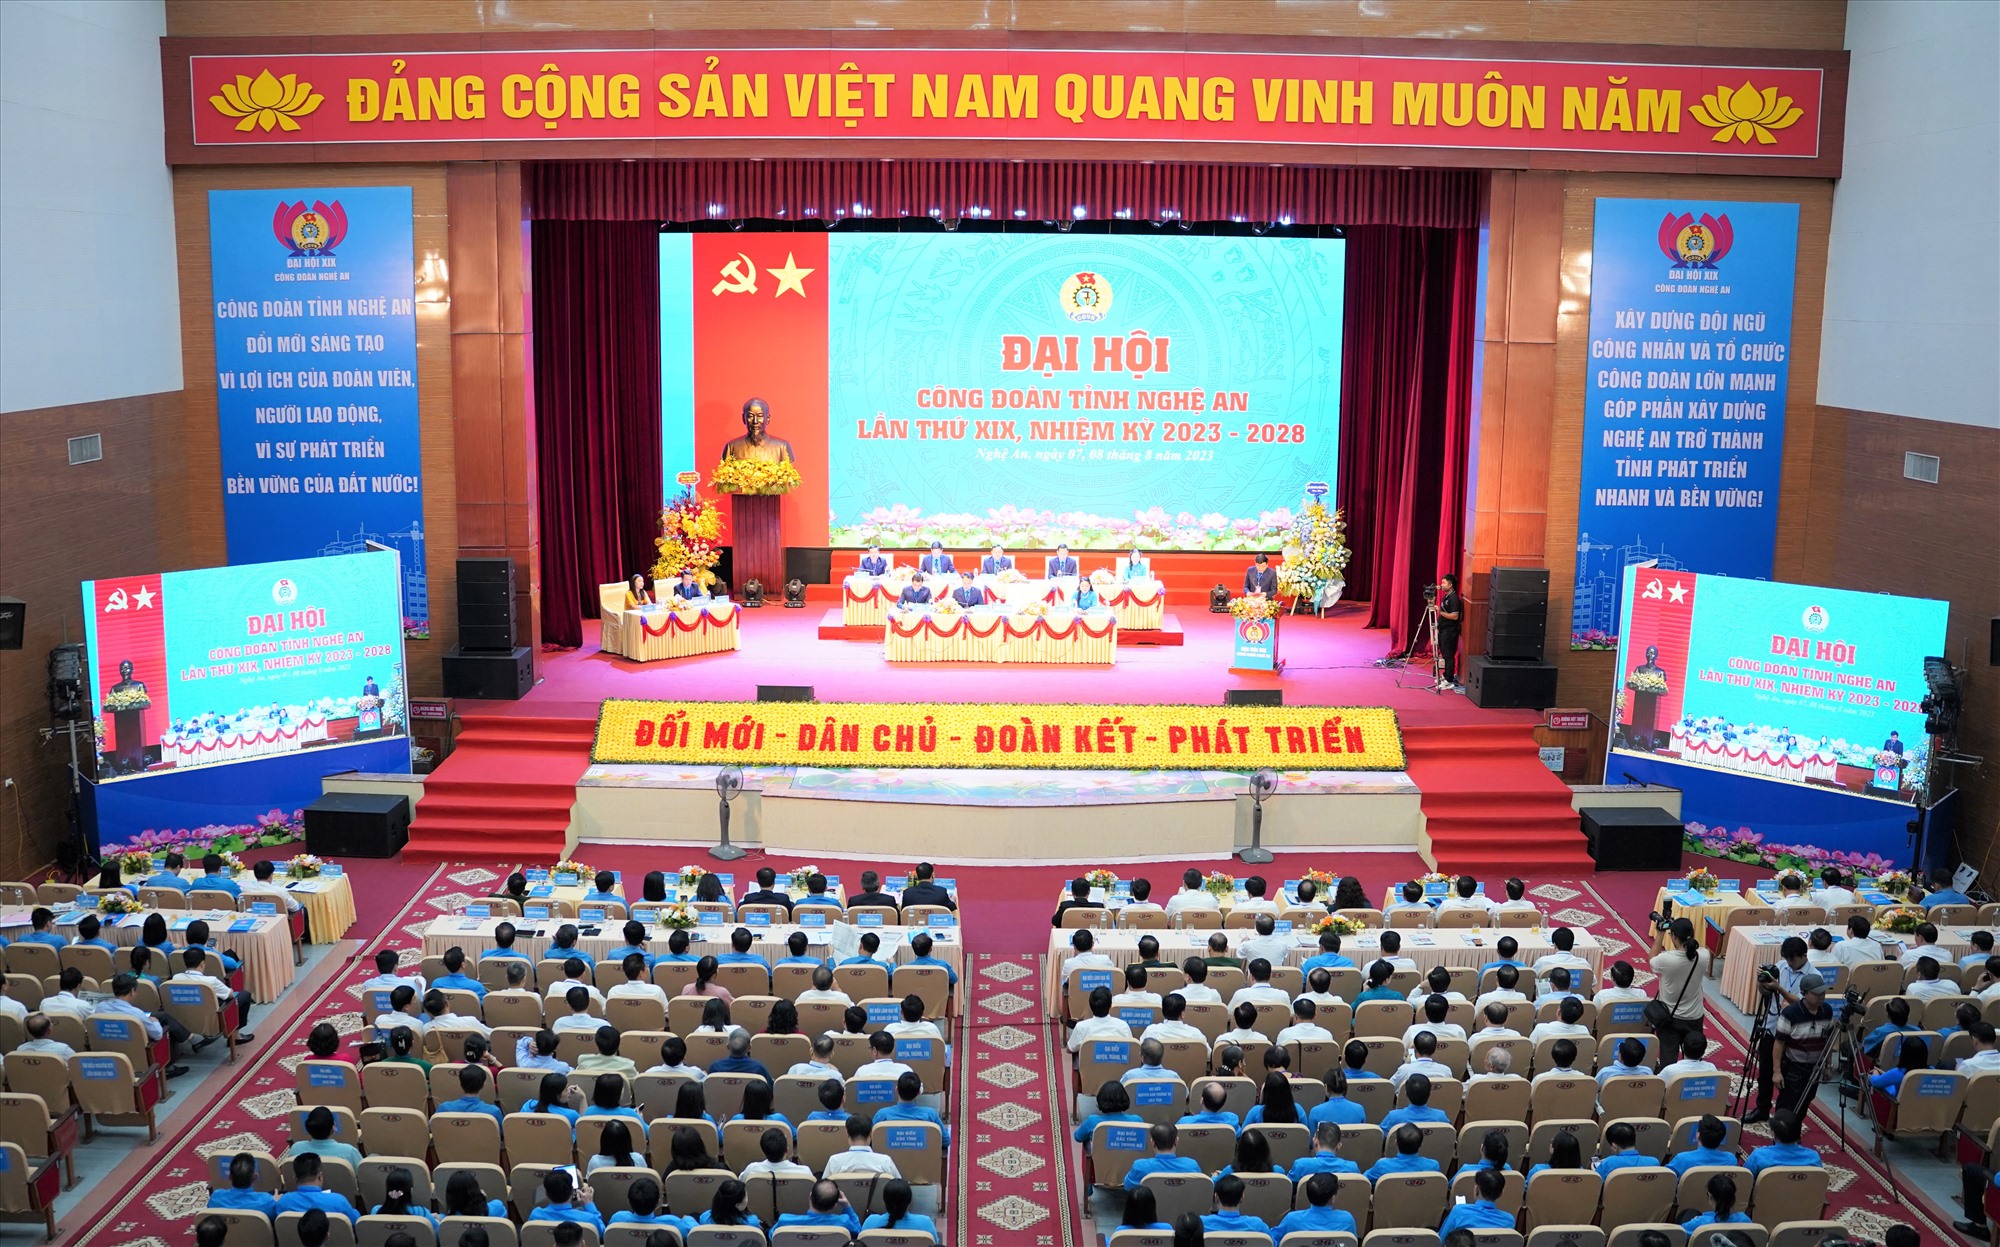 Toàn cảnh Đại hội Công đoàn tỉnh Nghệ An nhiệm kỳ 2023 - 2028. Ảnh: Hải Đăng